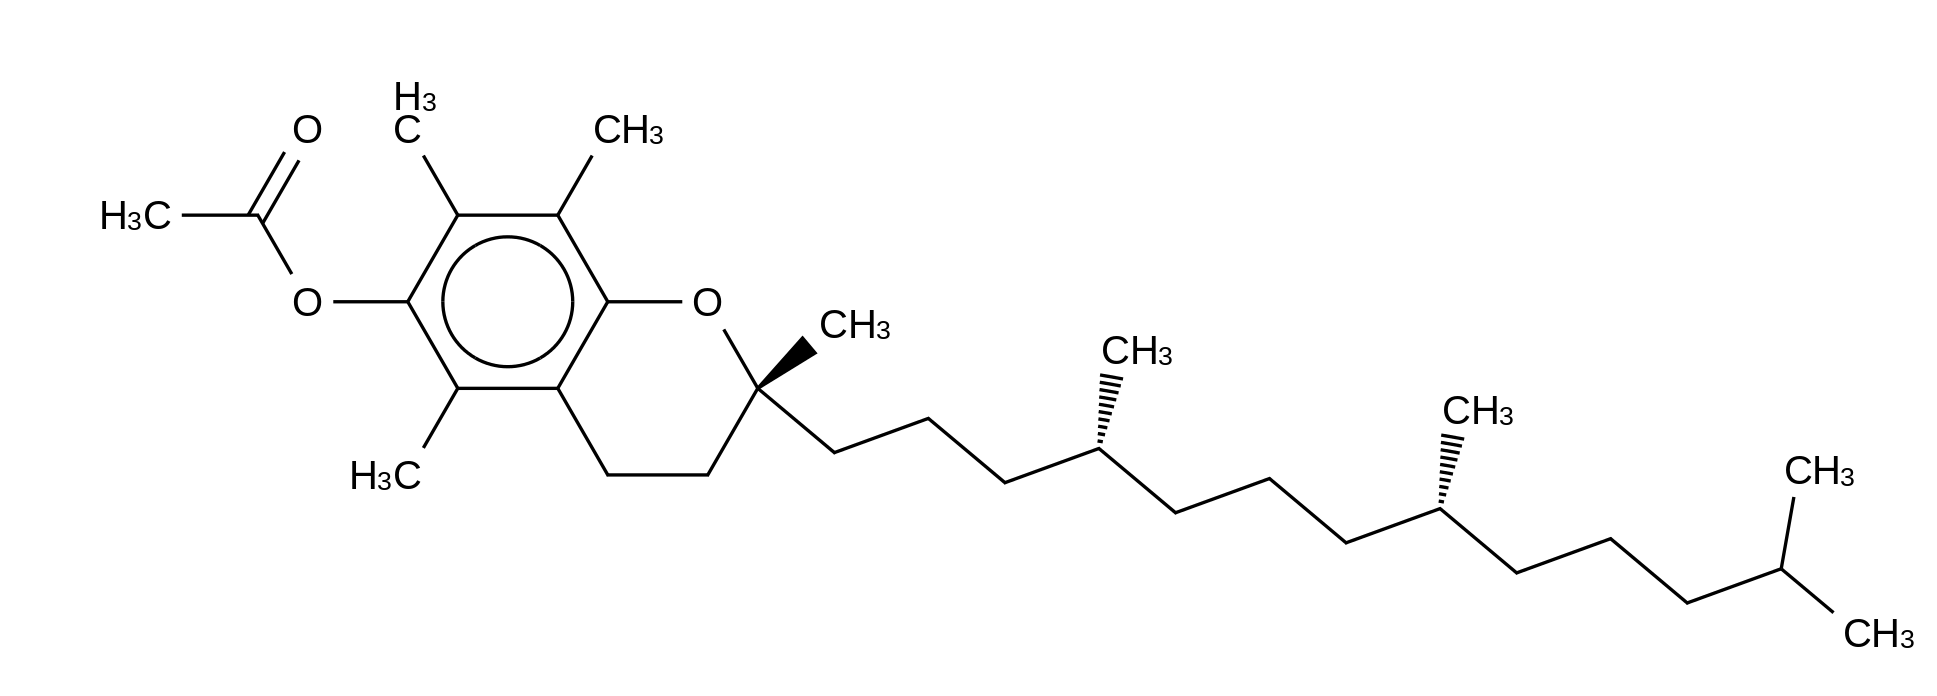 α-Tocopherol acetate